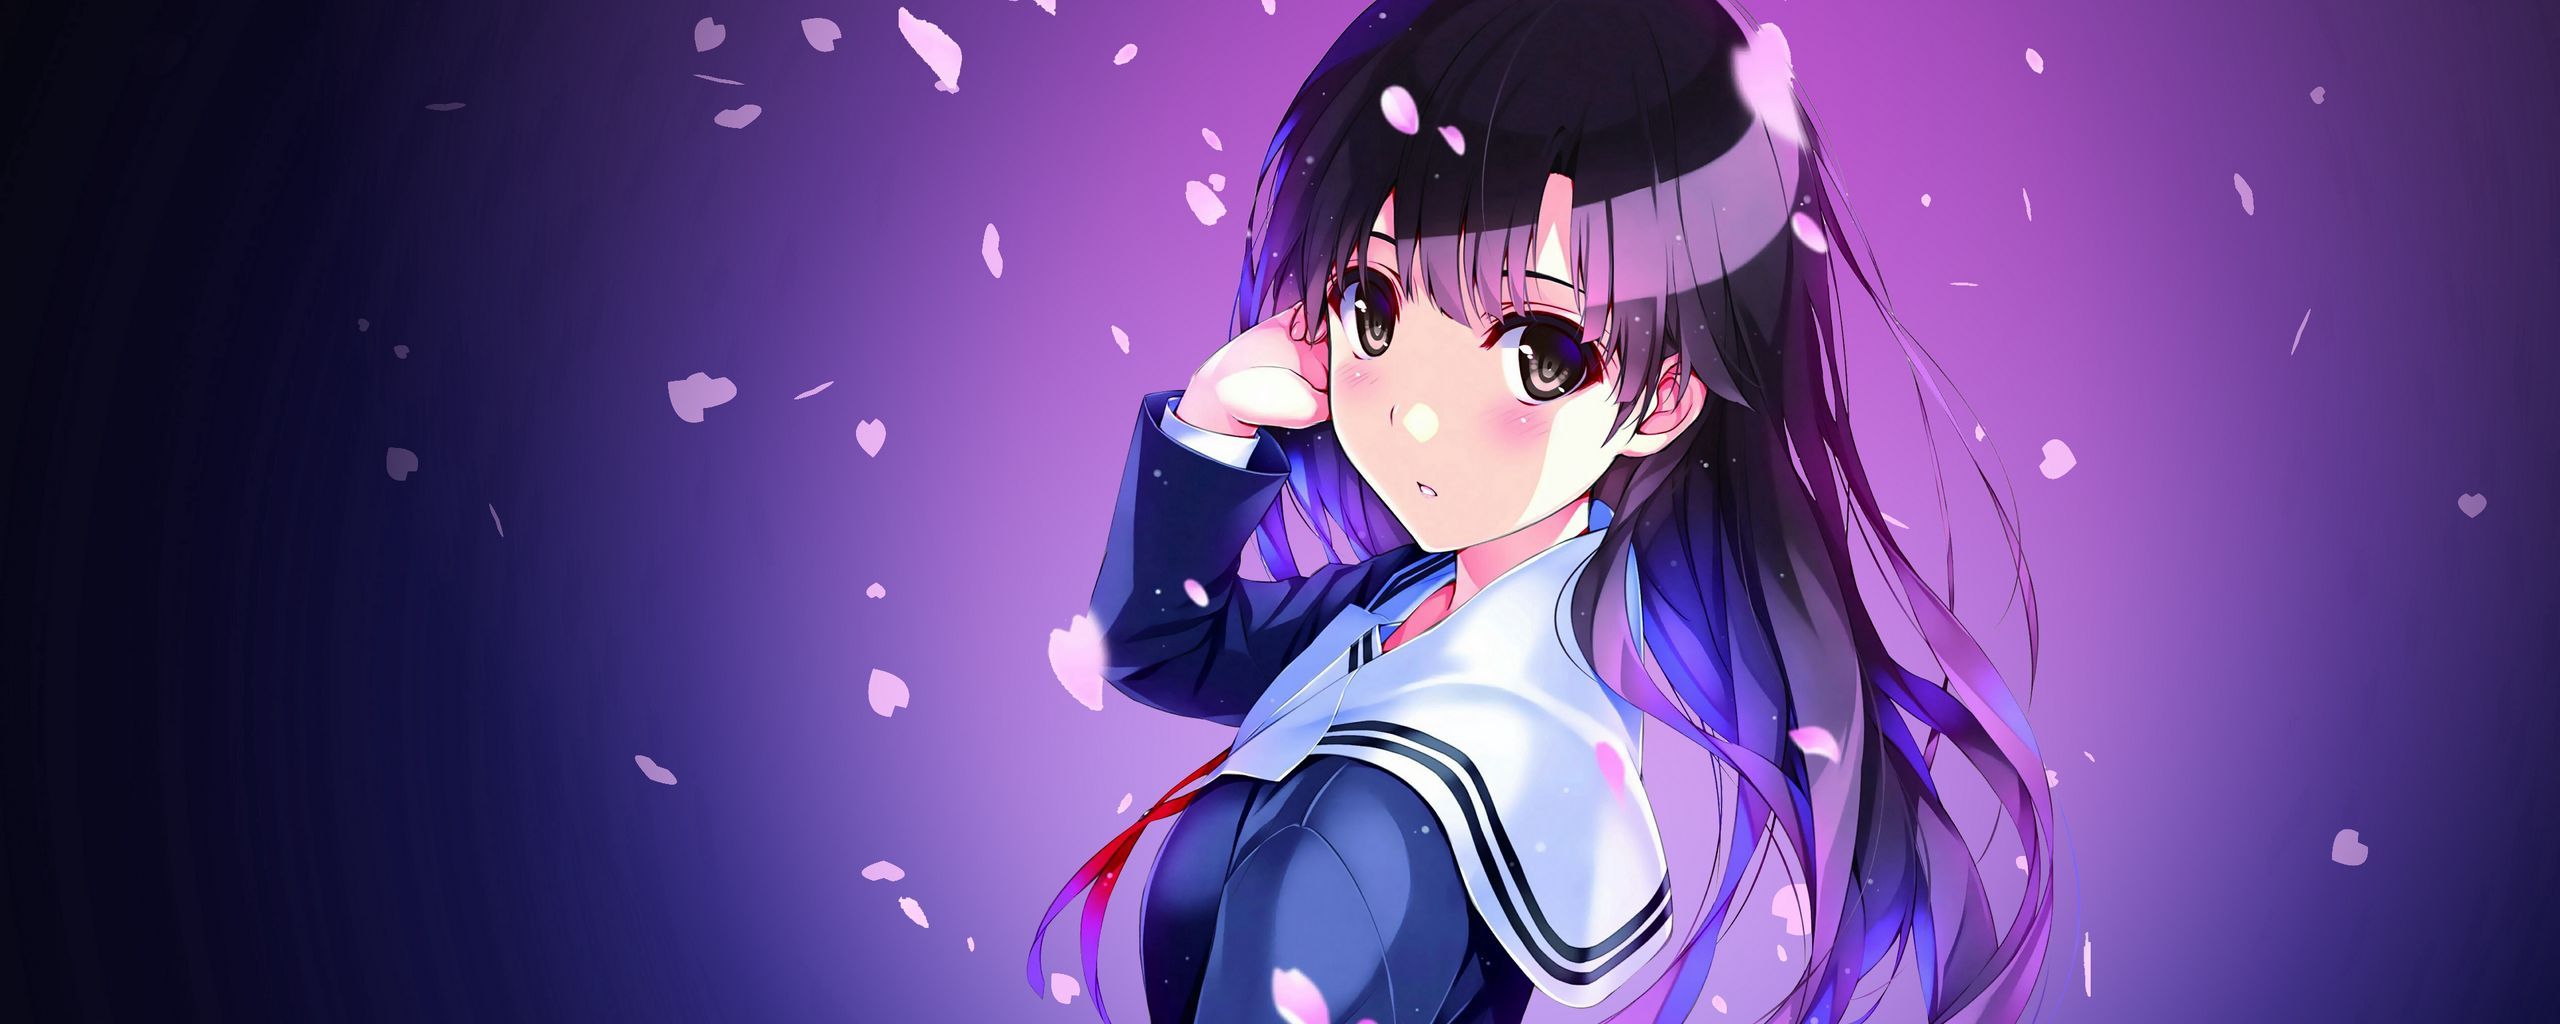 Download wallpaper 2560x1024 anime, schoolgirl, uniform, girl